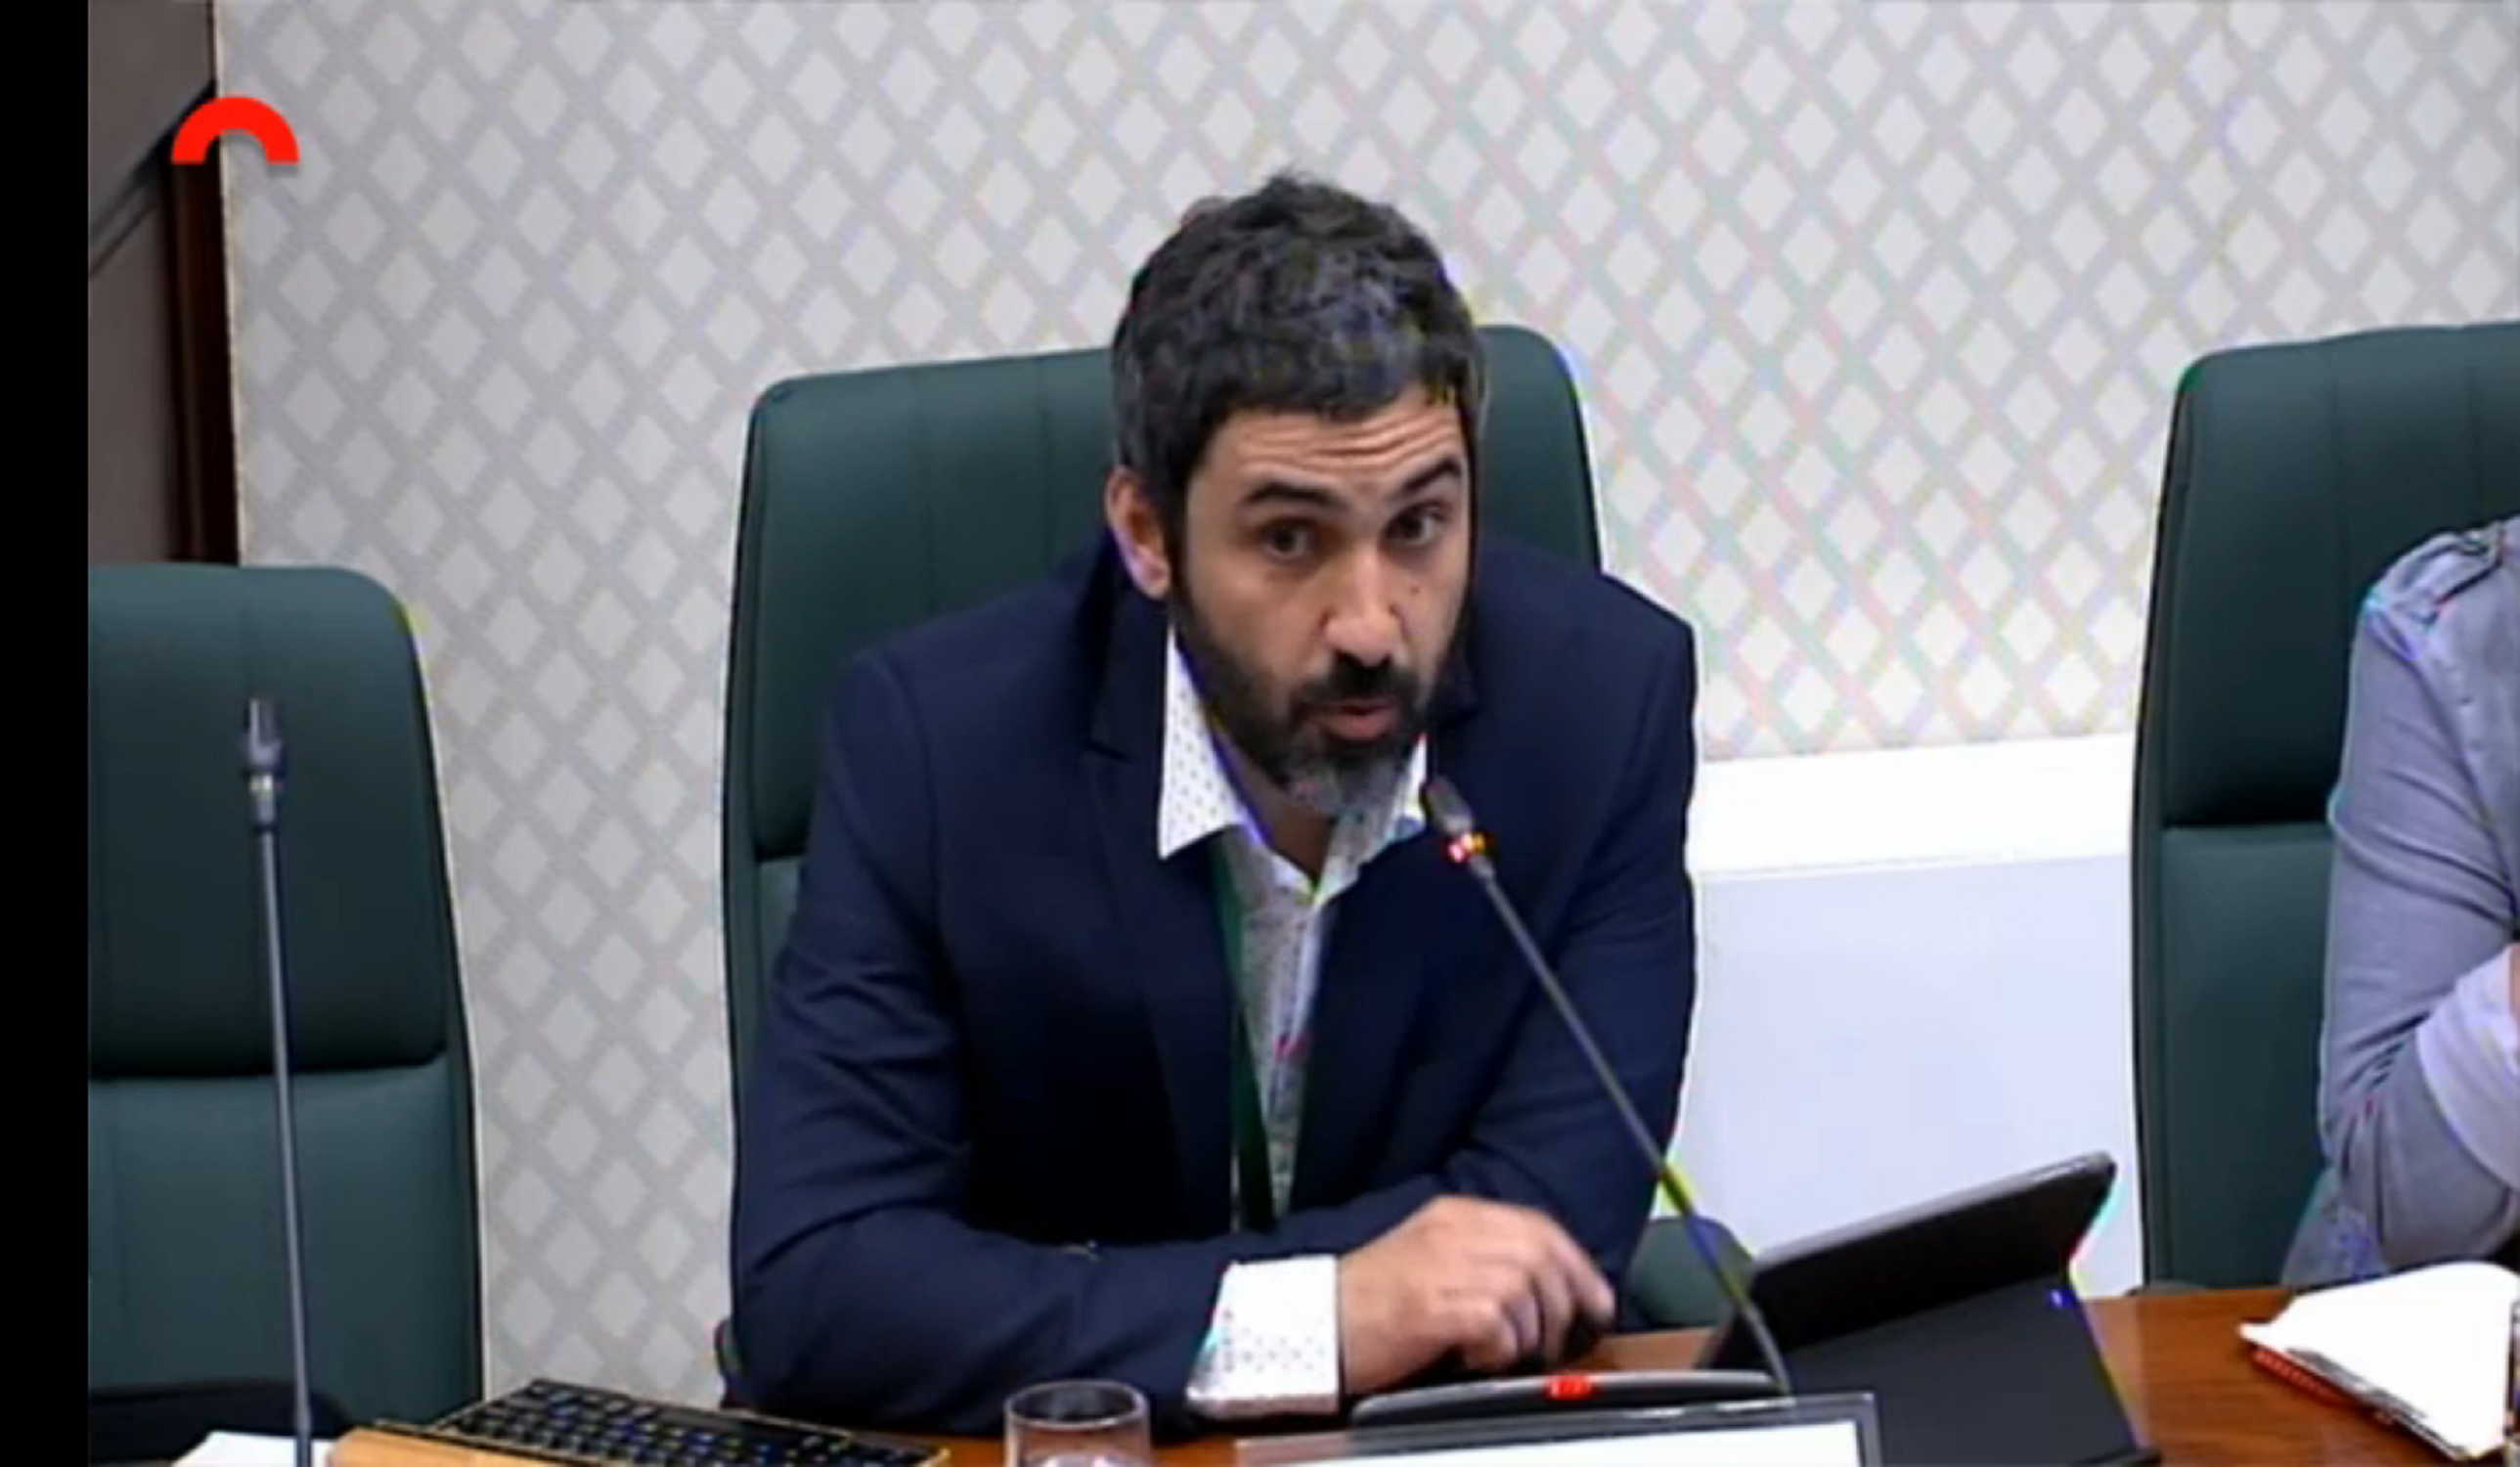 El periodista Pedro Águeda situa Eugenio Pino com “l’artífex” de l’Operació Catalunya